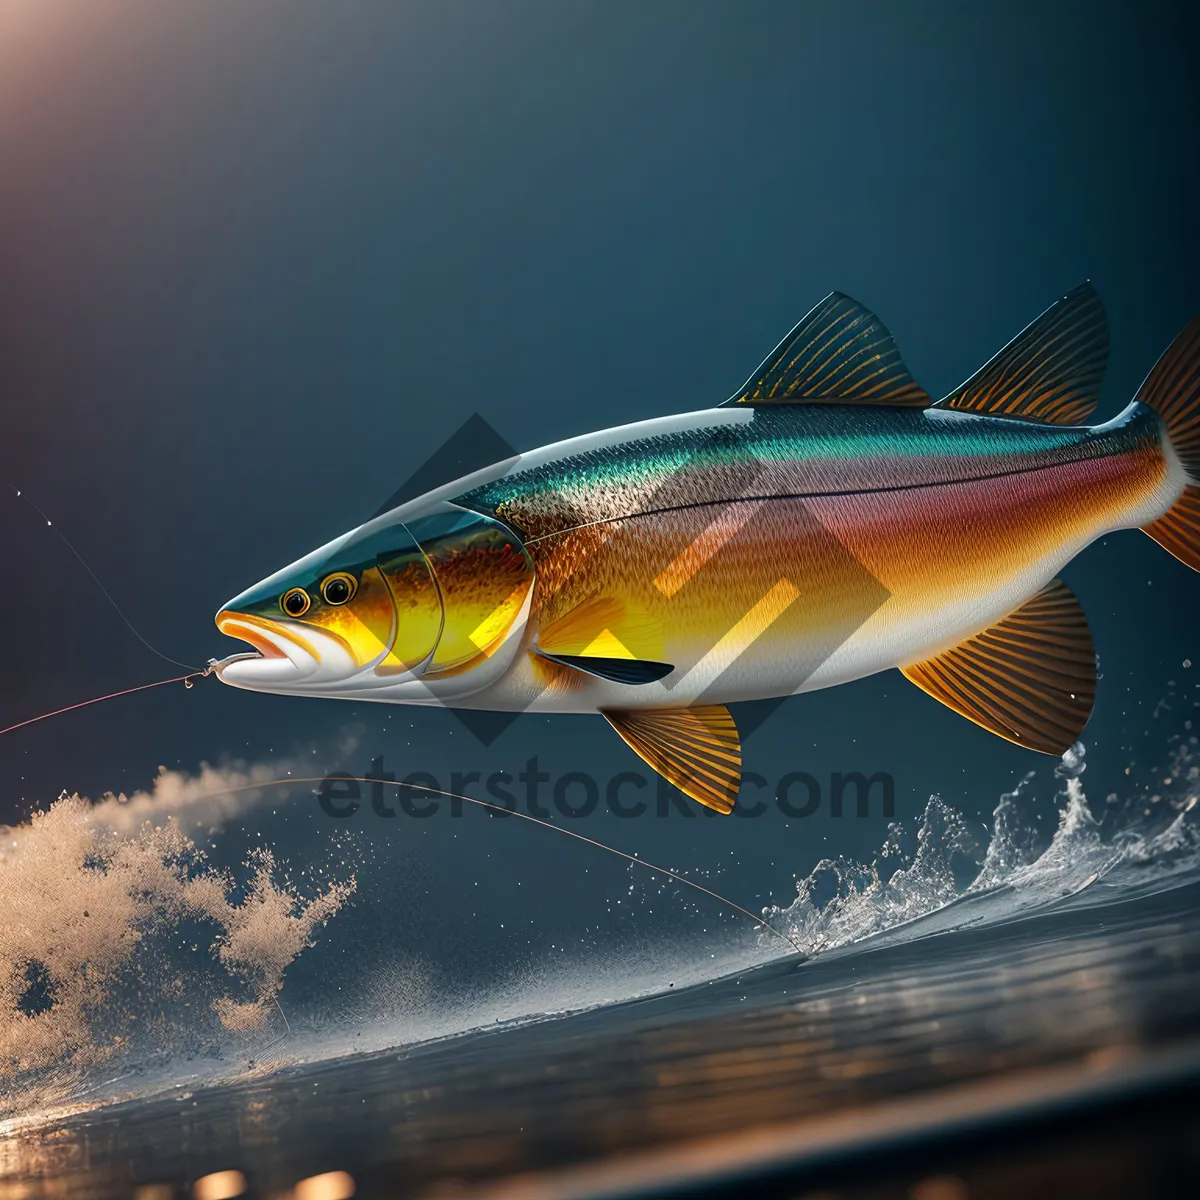 Picture of Tuna Catch in Aquatic Marine Waters